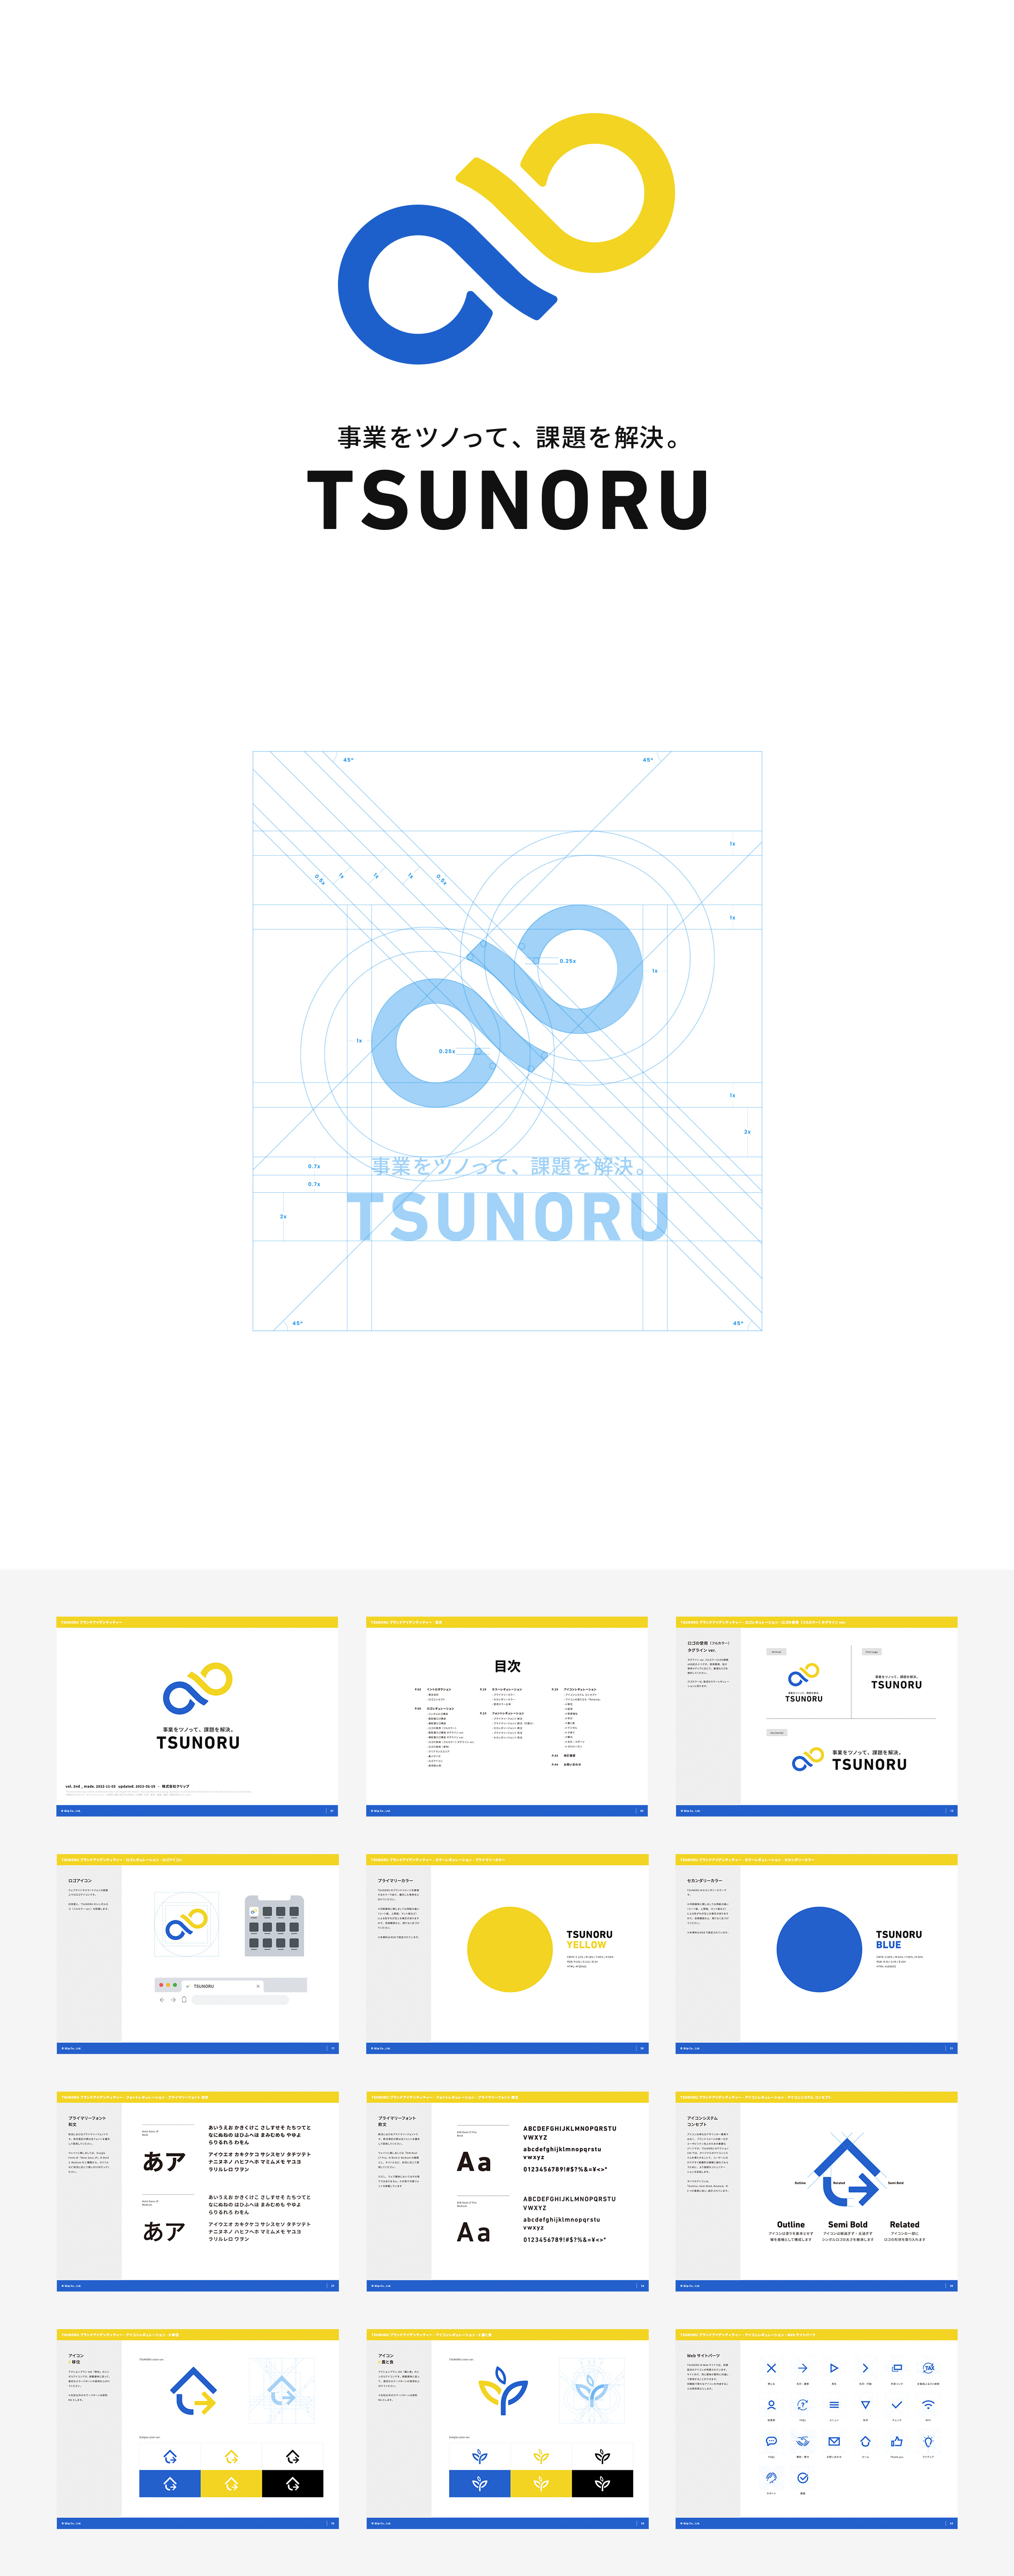 一般社団法人TSUNORU / インキュベーションプラットフォーム『TSUNORU』